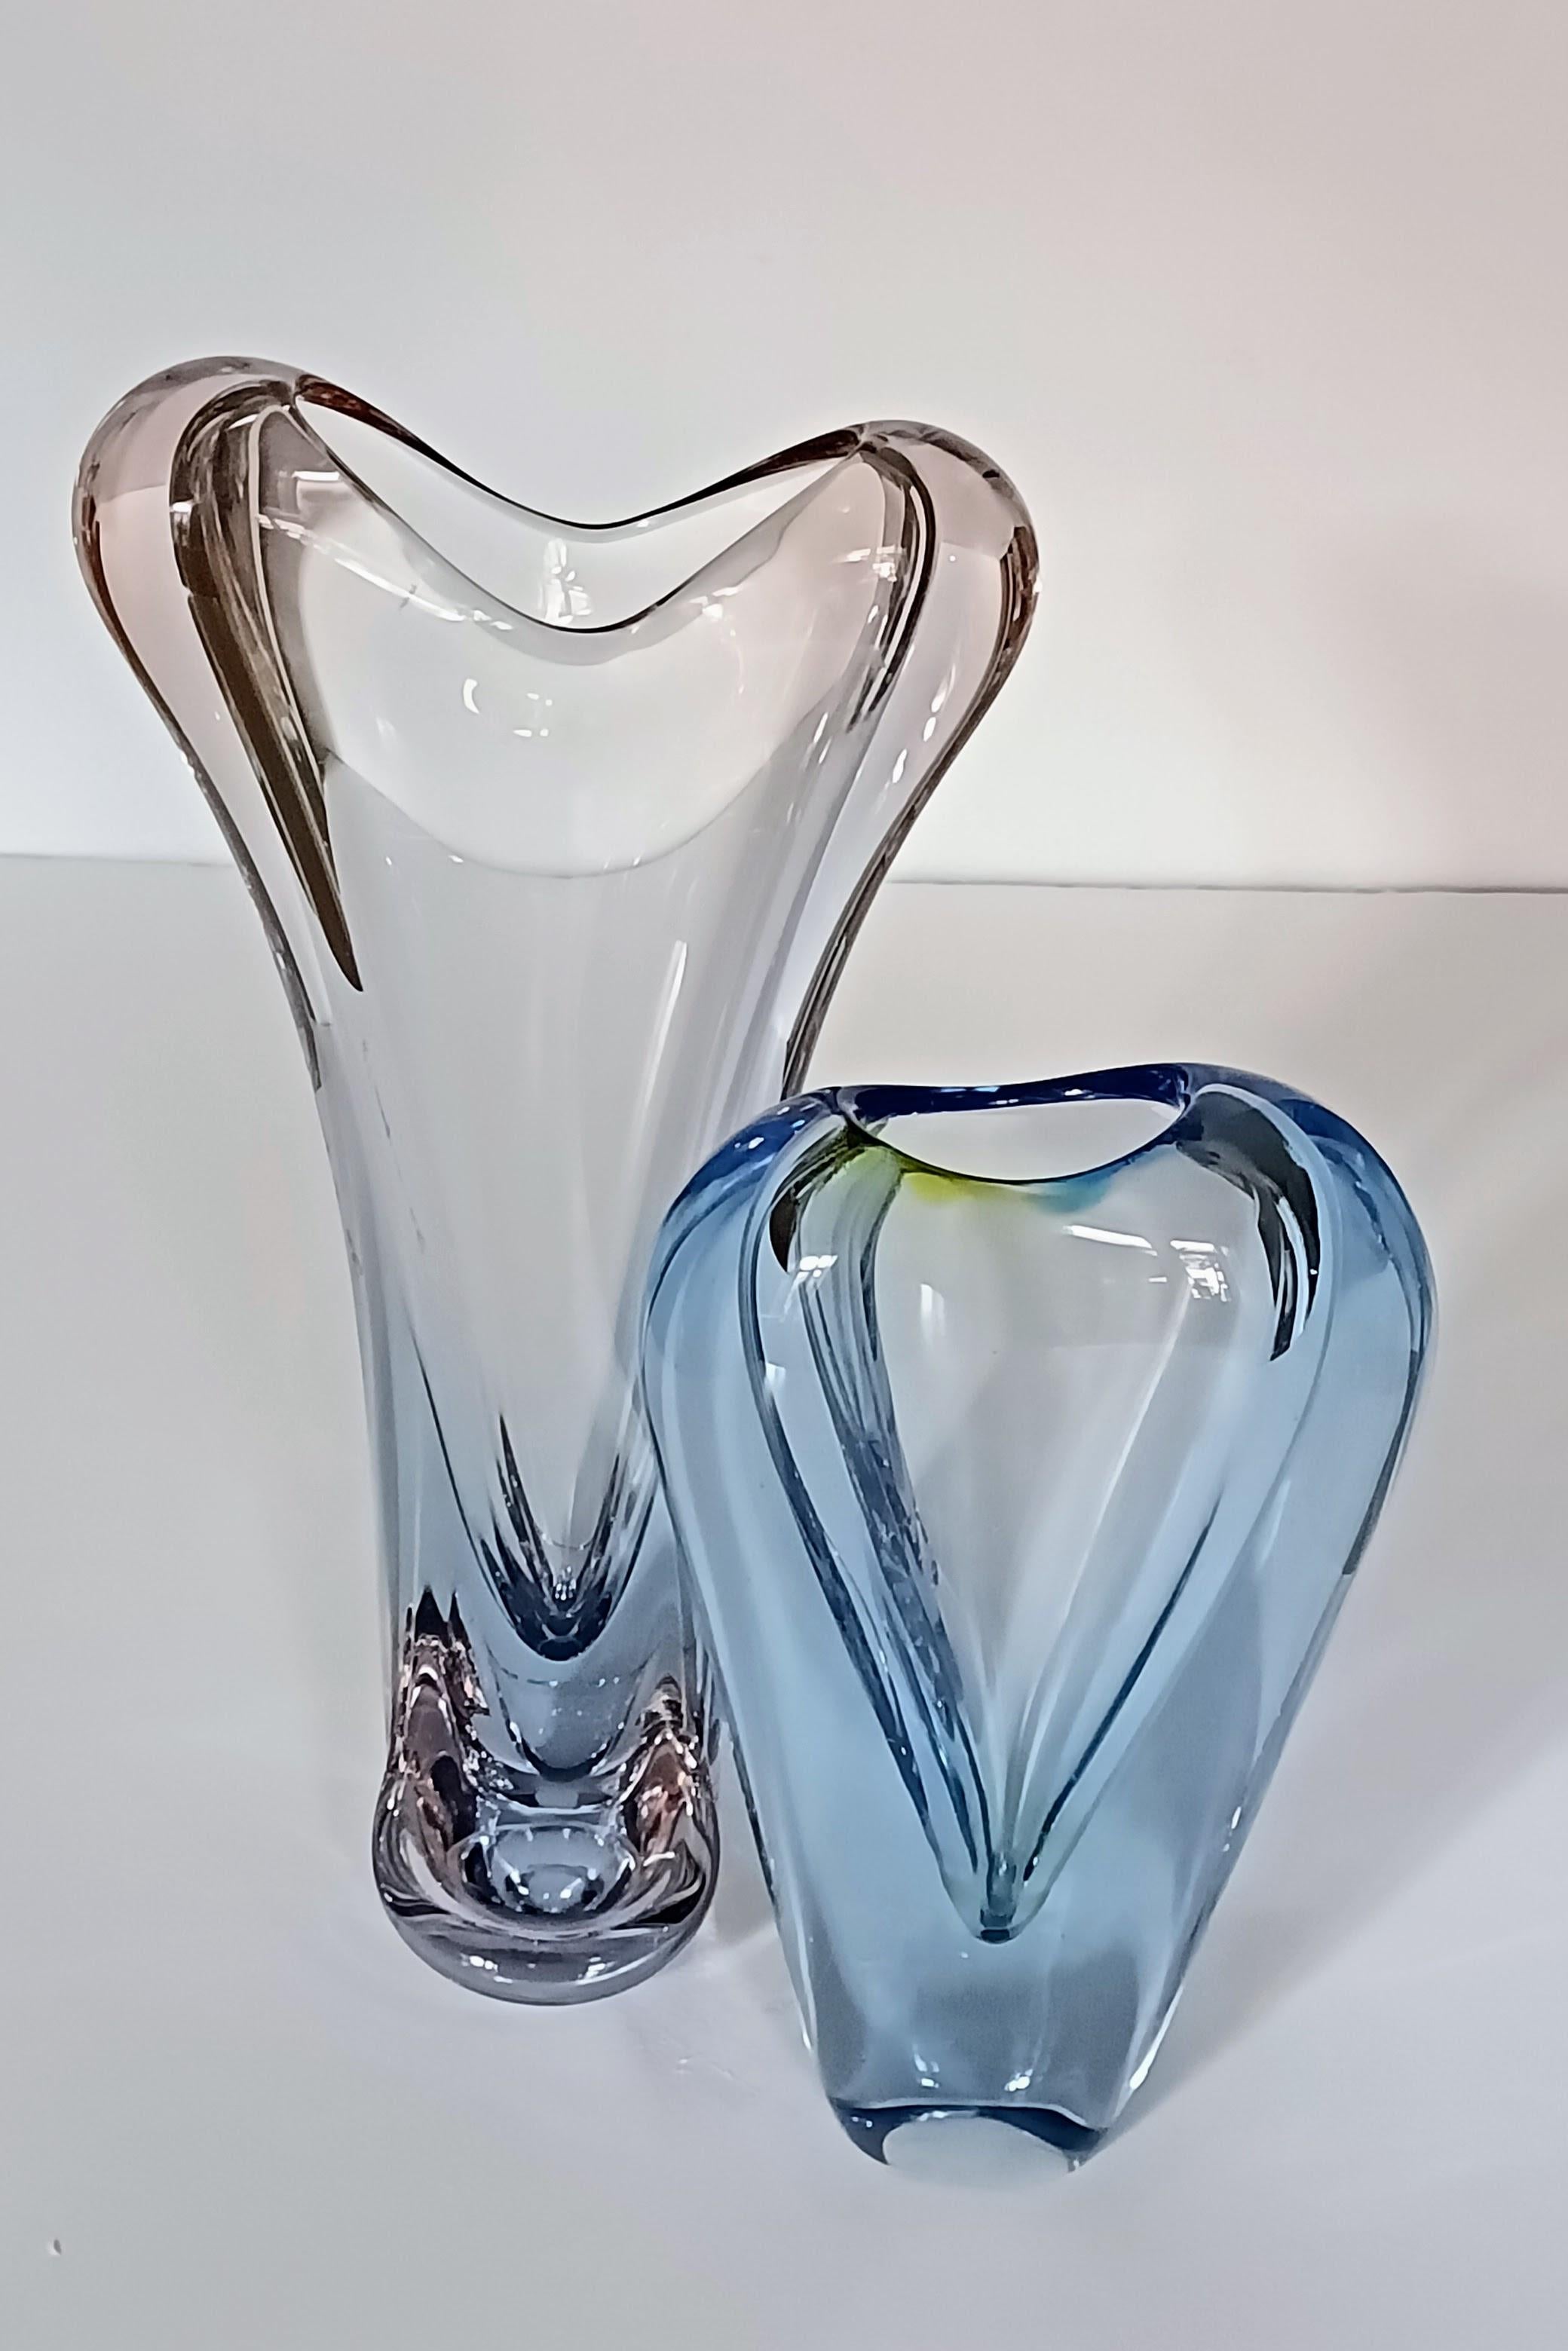 Hand-Crafted Jan Beranek Pair of Vases for Skrdlovice Glass, Czech Republic, 1950s